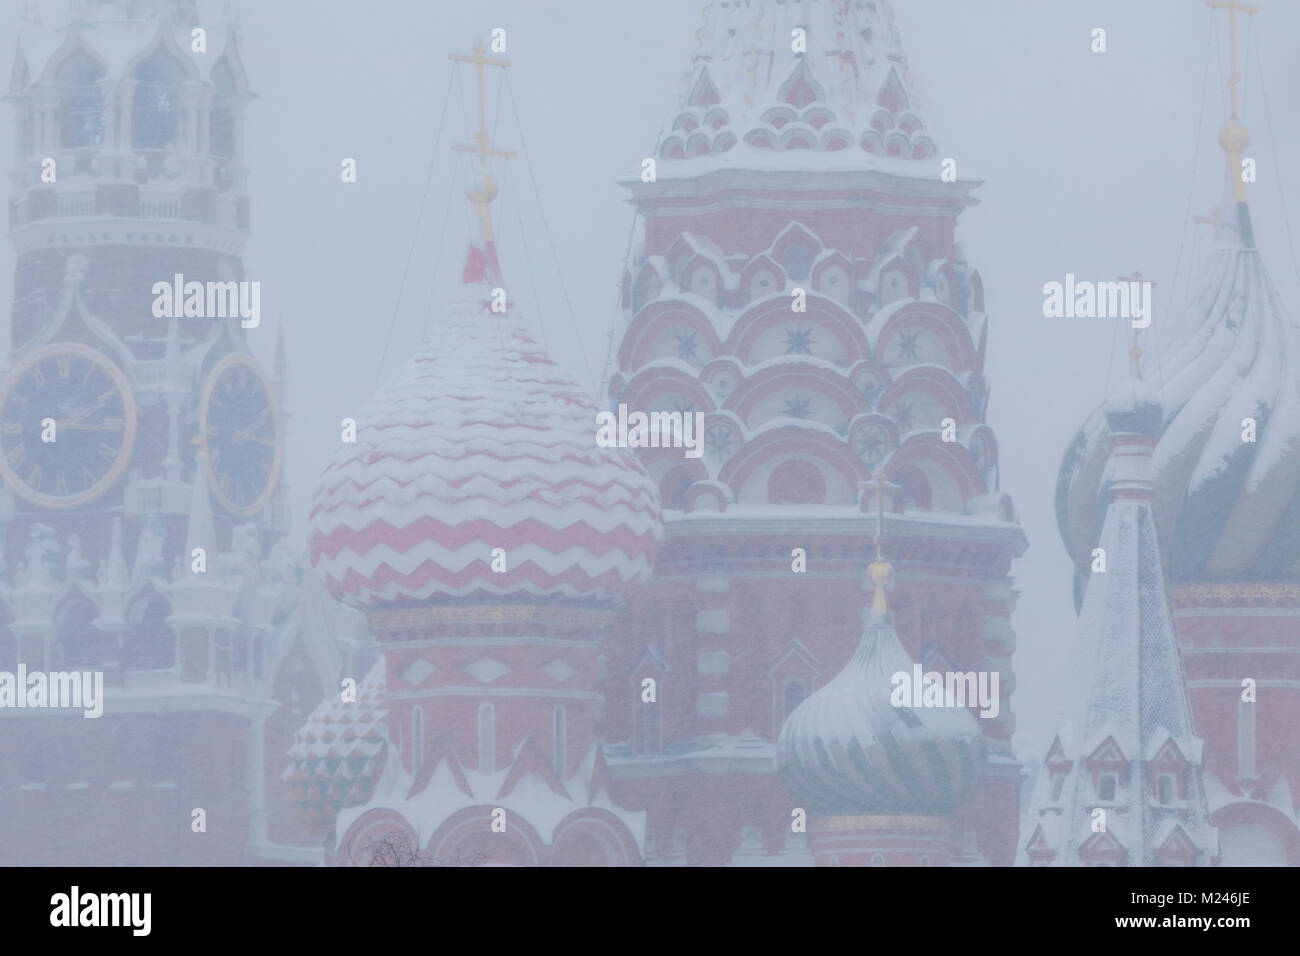 Moscou, Russie - 4 février 2018 : vue du Kremlin et de la cathédrale Saint-Basile sur la place Rouge lors d'une chute de neige anormale à Moscou, Russie crédit : Nikolay Vinokurov/Alamy Live News Banque D'Images